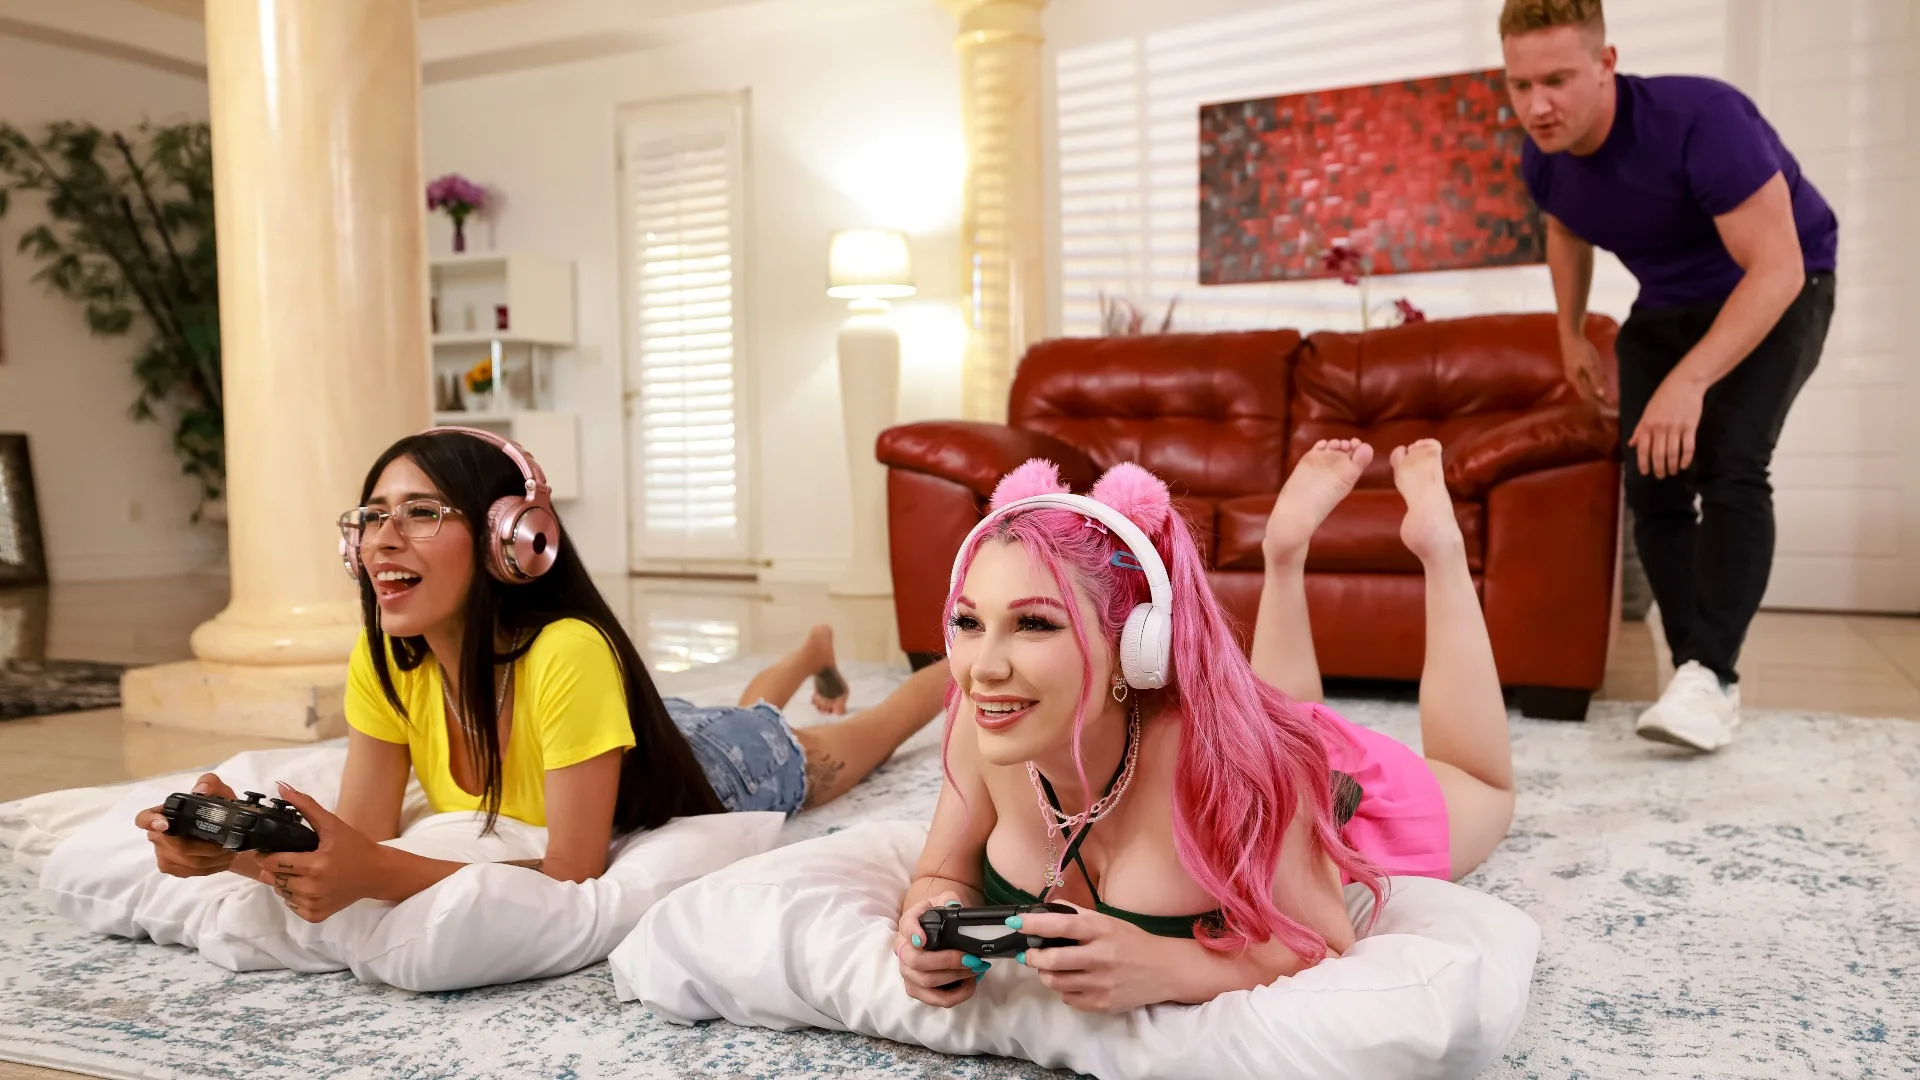 Hot Gamer Craves Freeuse Anal - Hot Girls Game